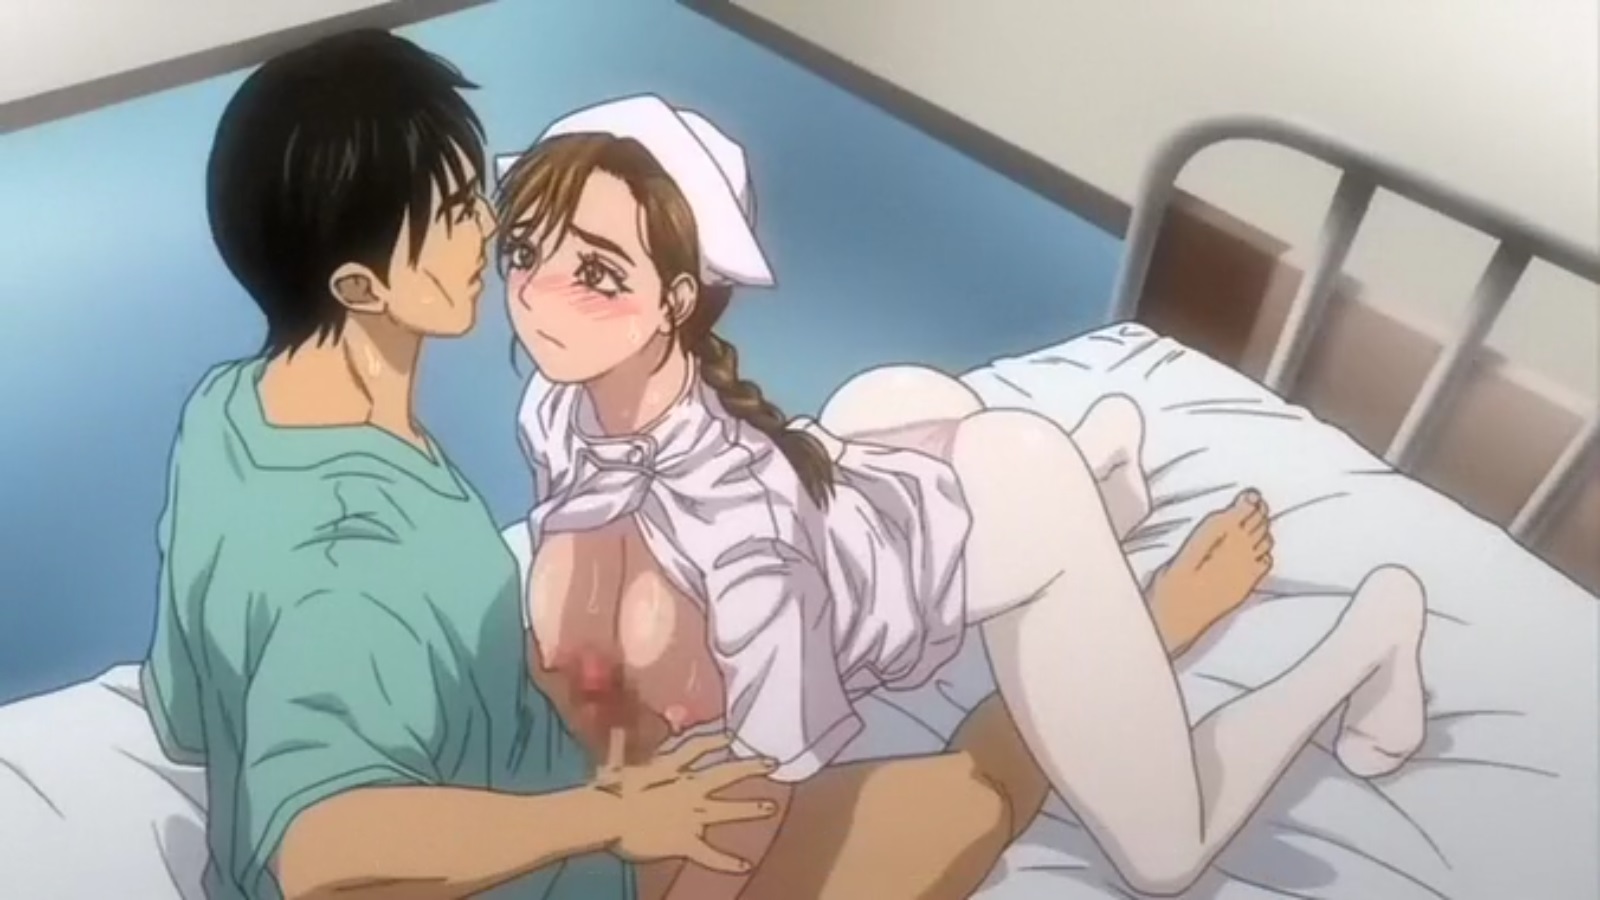 Japanese Nurse Porn Hentai - Hentai Movie Hospital Nurse Fujita Yukari Porn | HentaiMovie.Tv